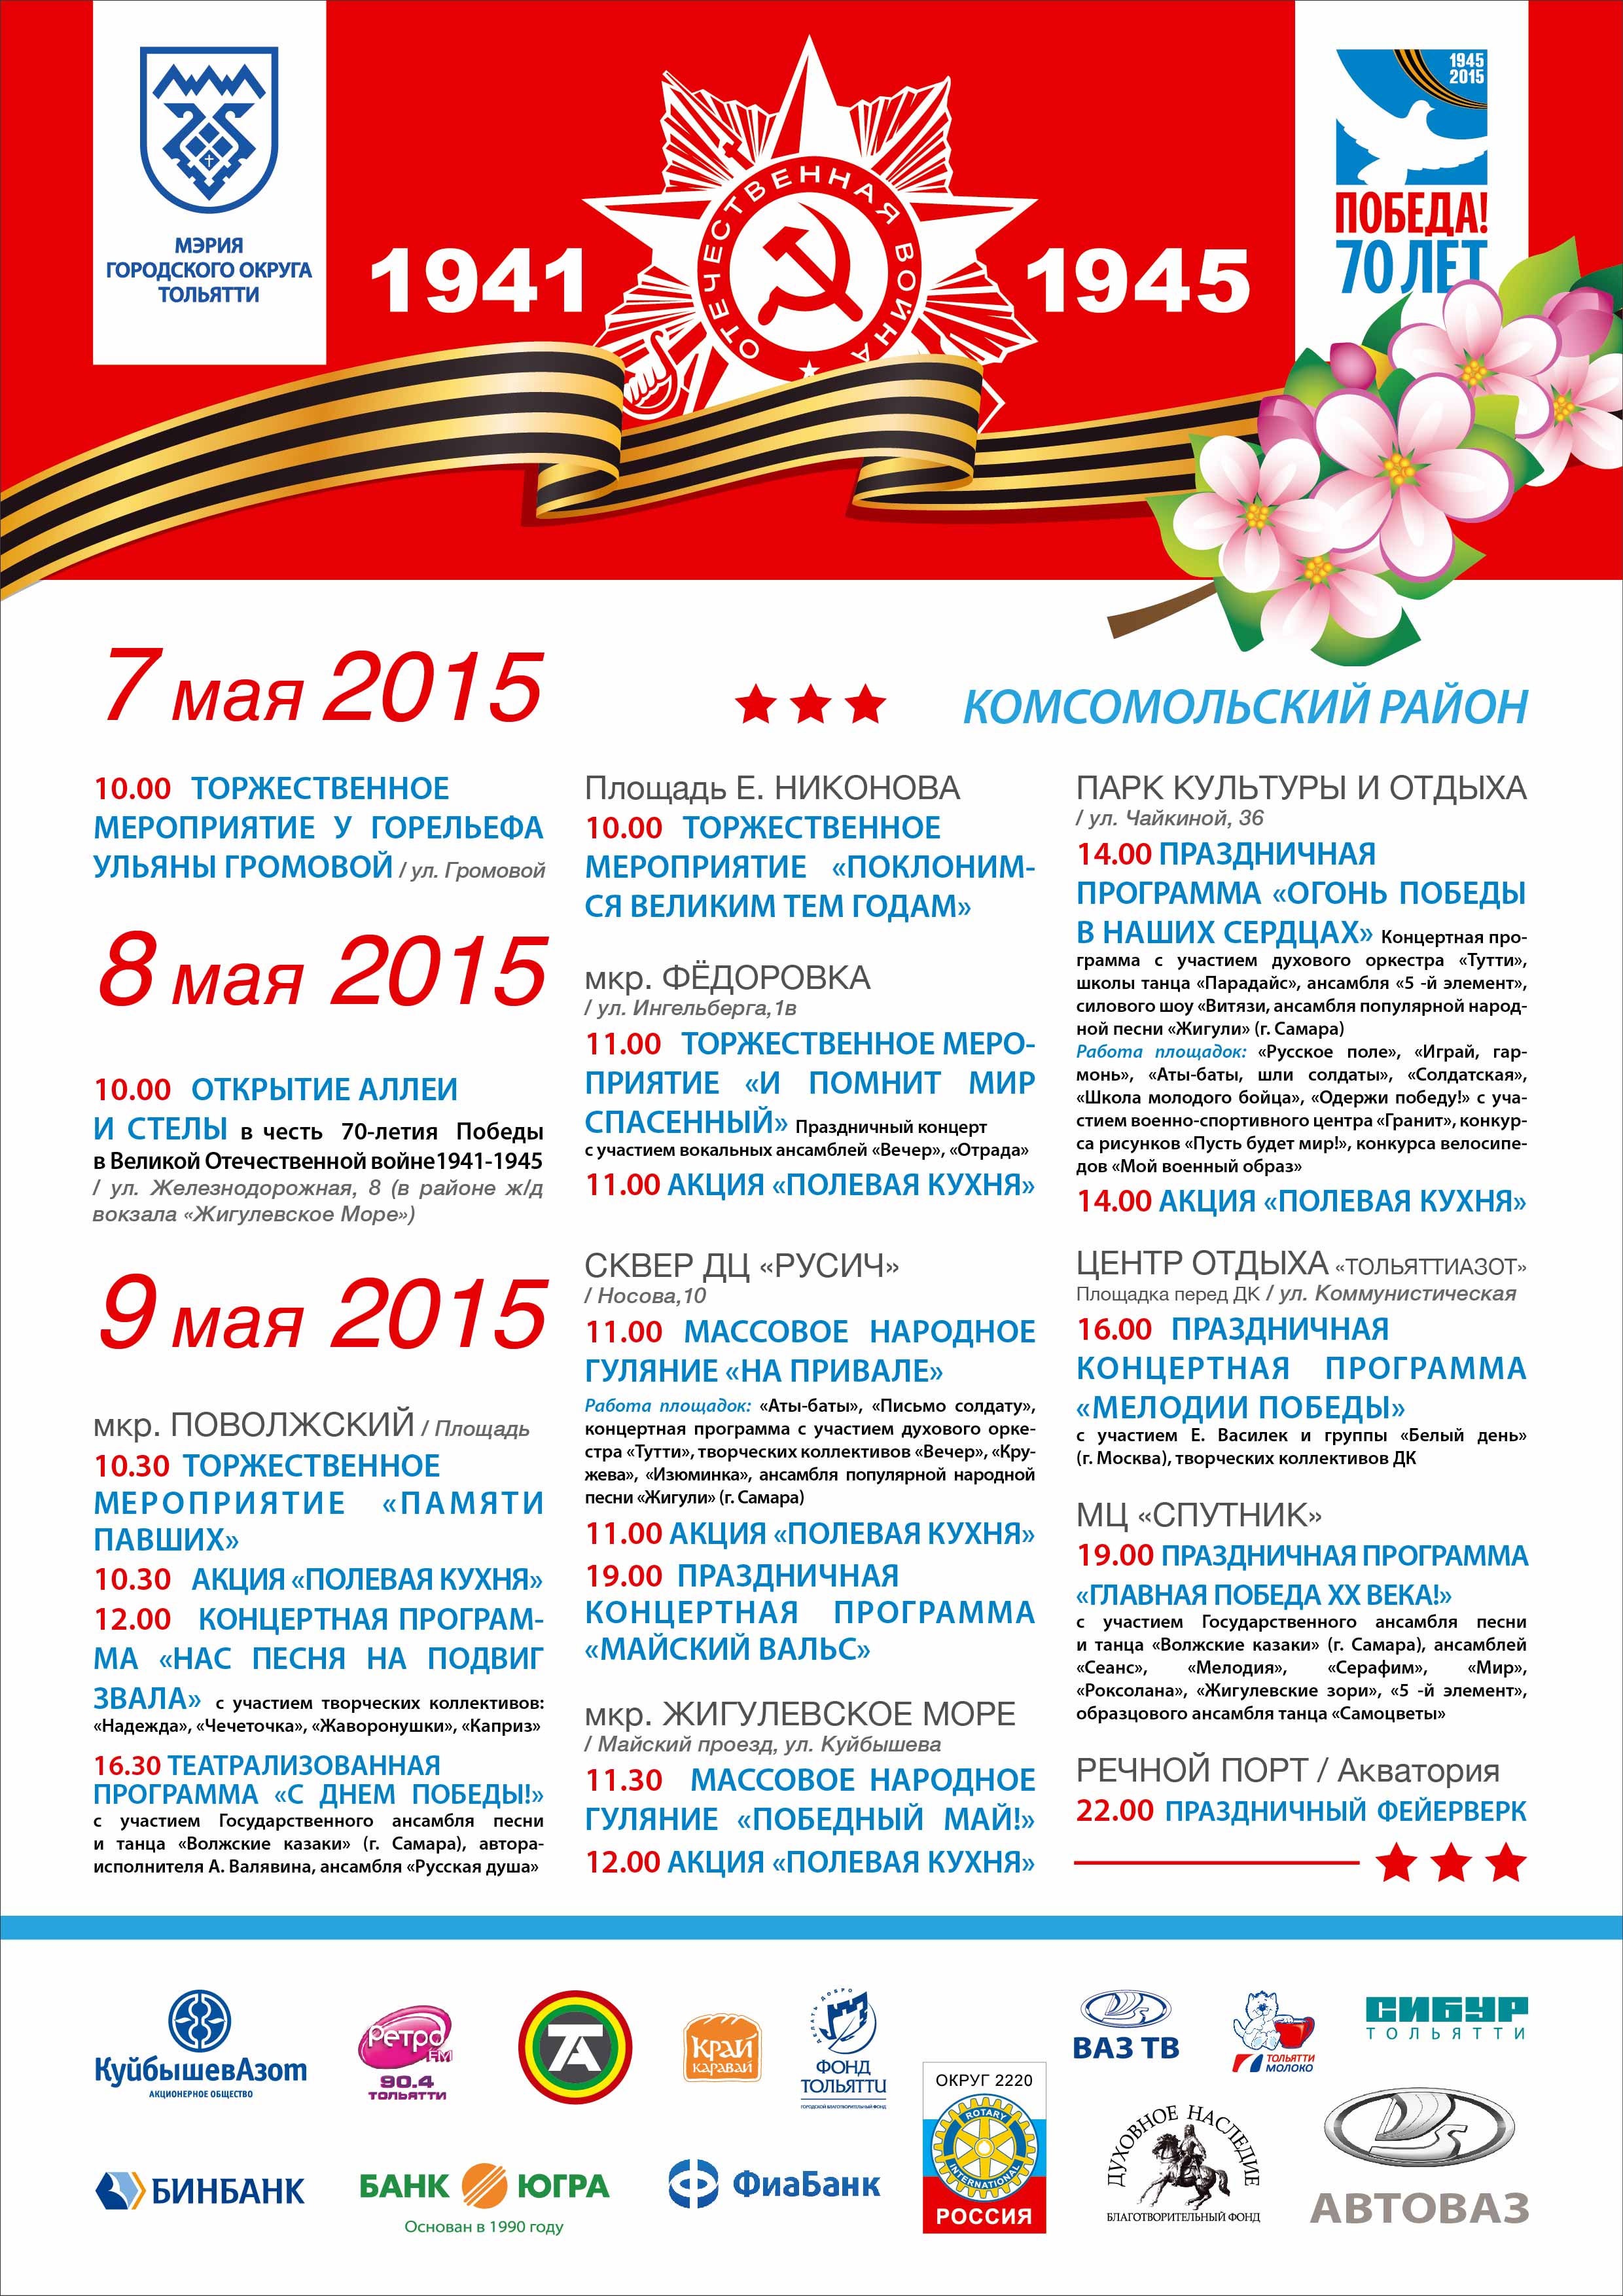 Мероприятия посвященные 70. Мероприятия в Тольятти на 9 мая. Афиша 9 мая. Афиша мероприятий на 9 мая. Афиша праздничных мероприятий на 9 мая.